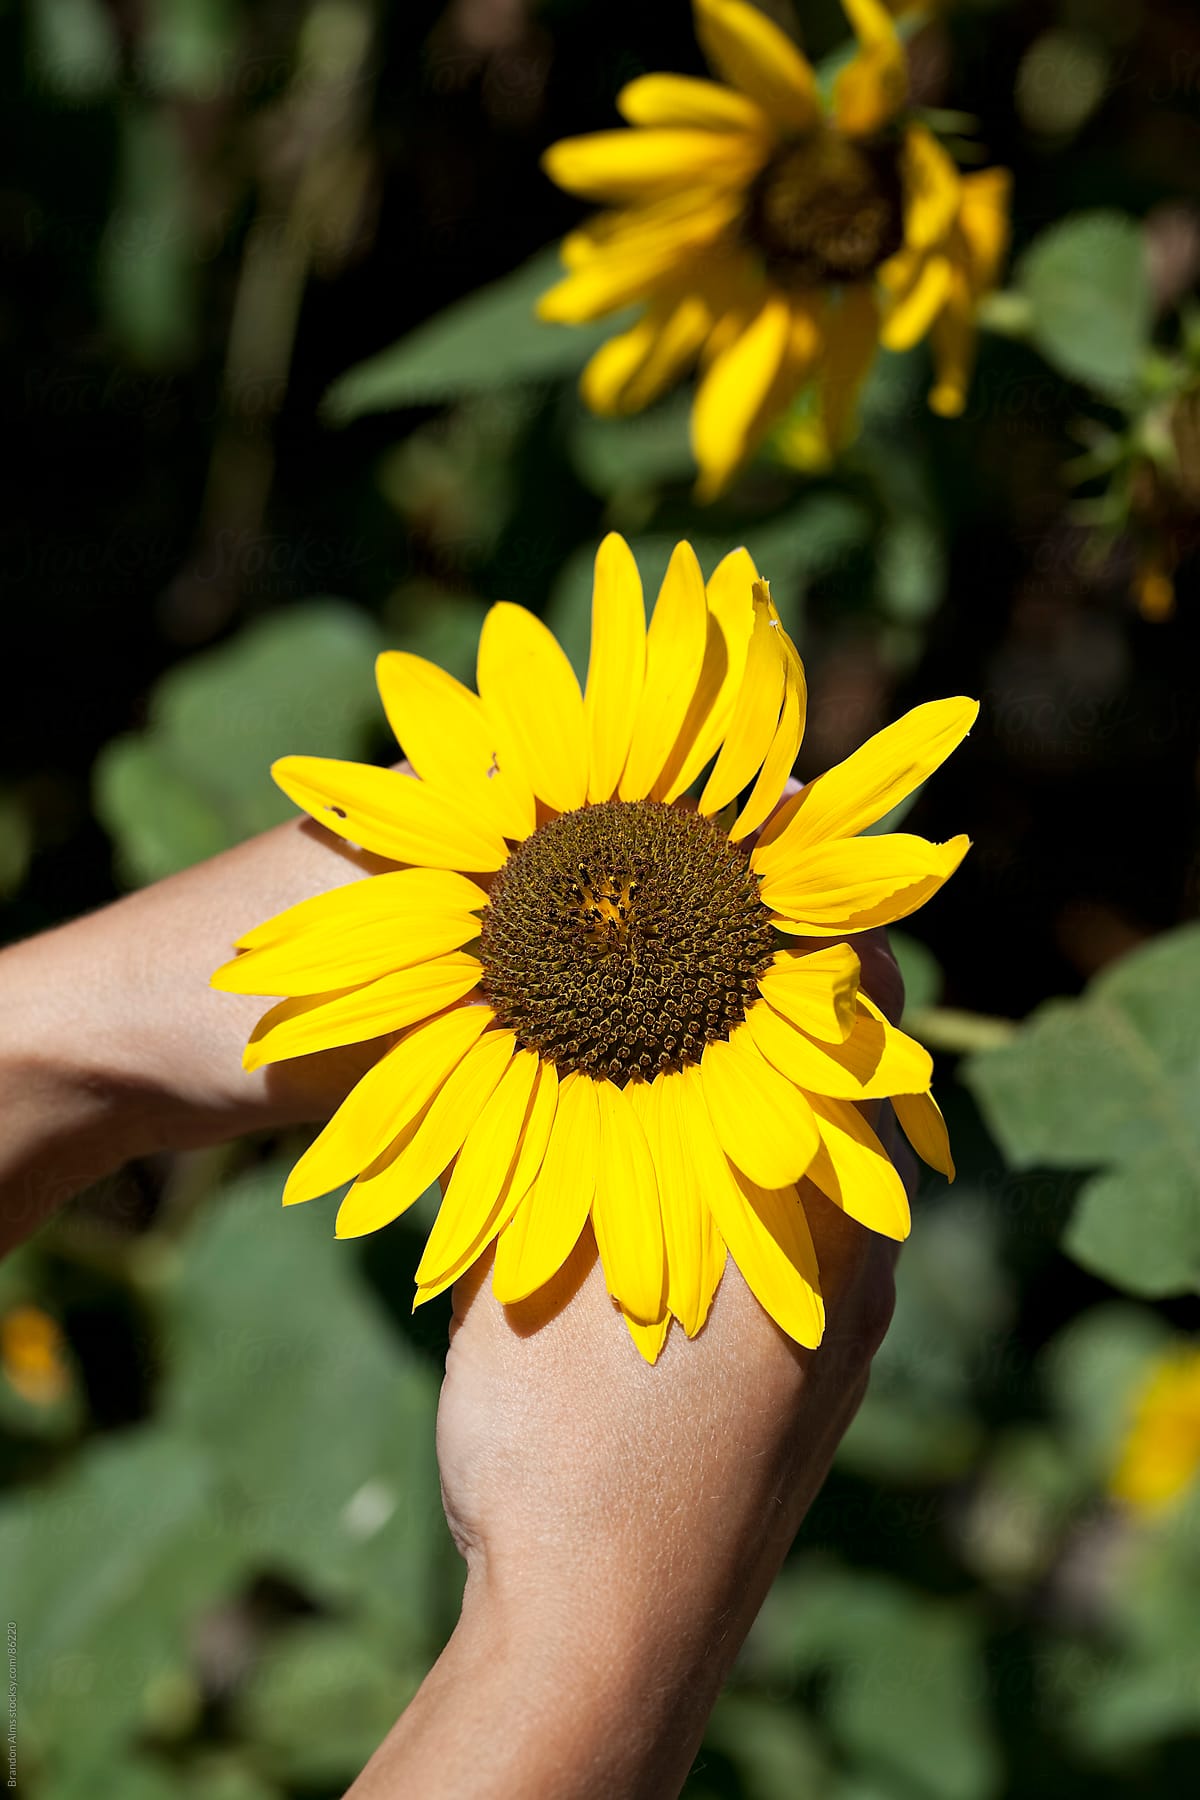 Hands Holding a Sunflower